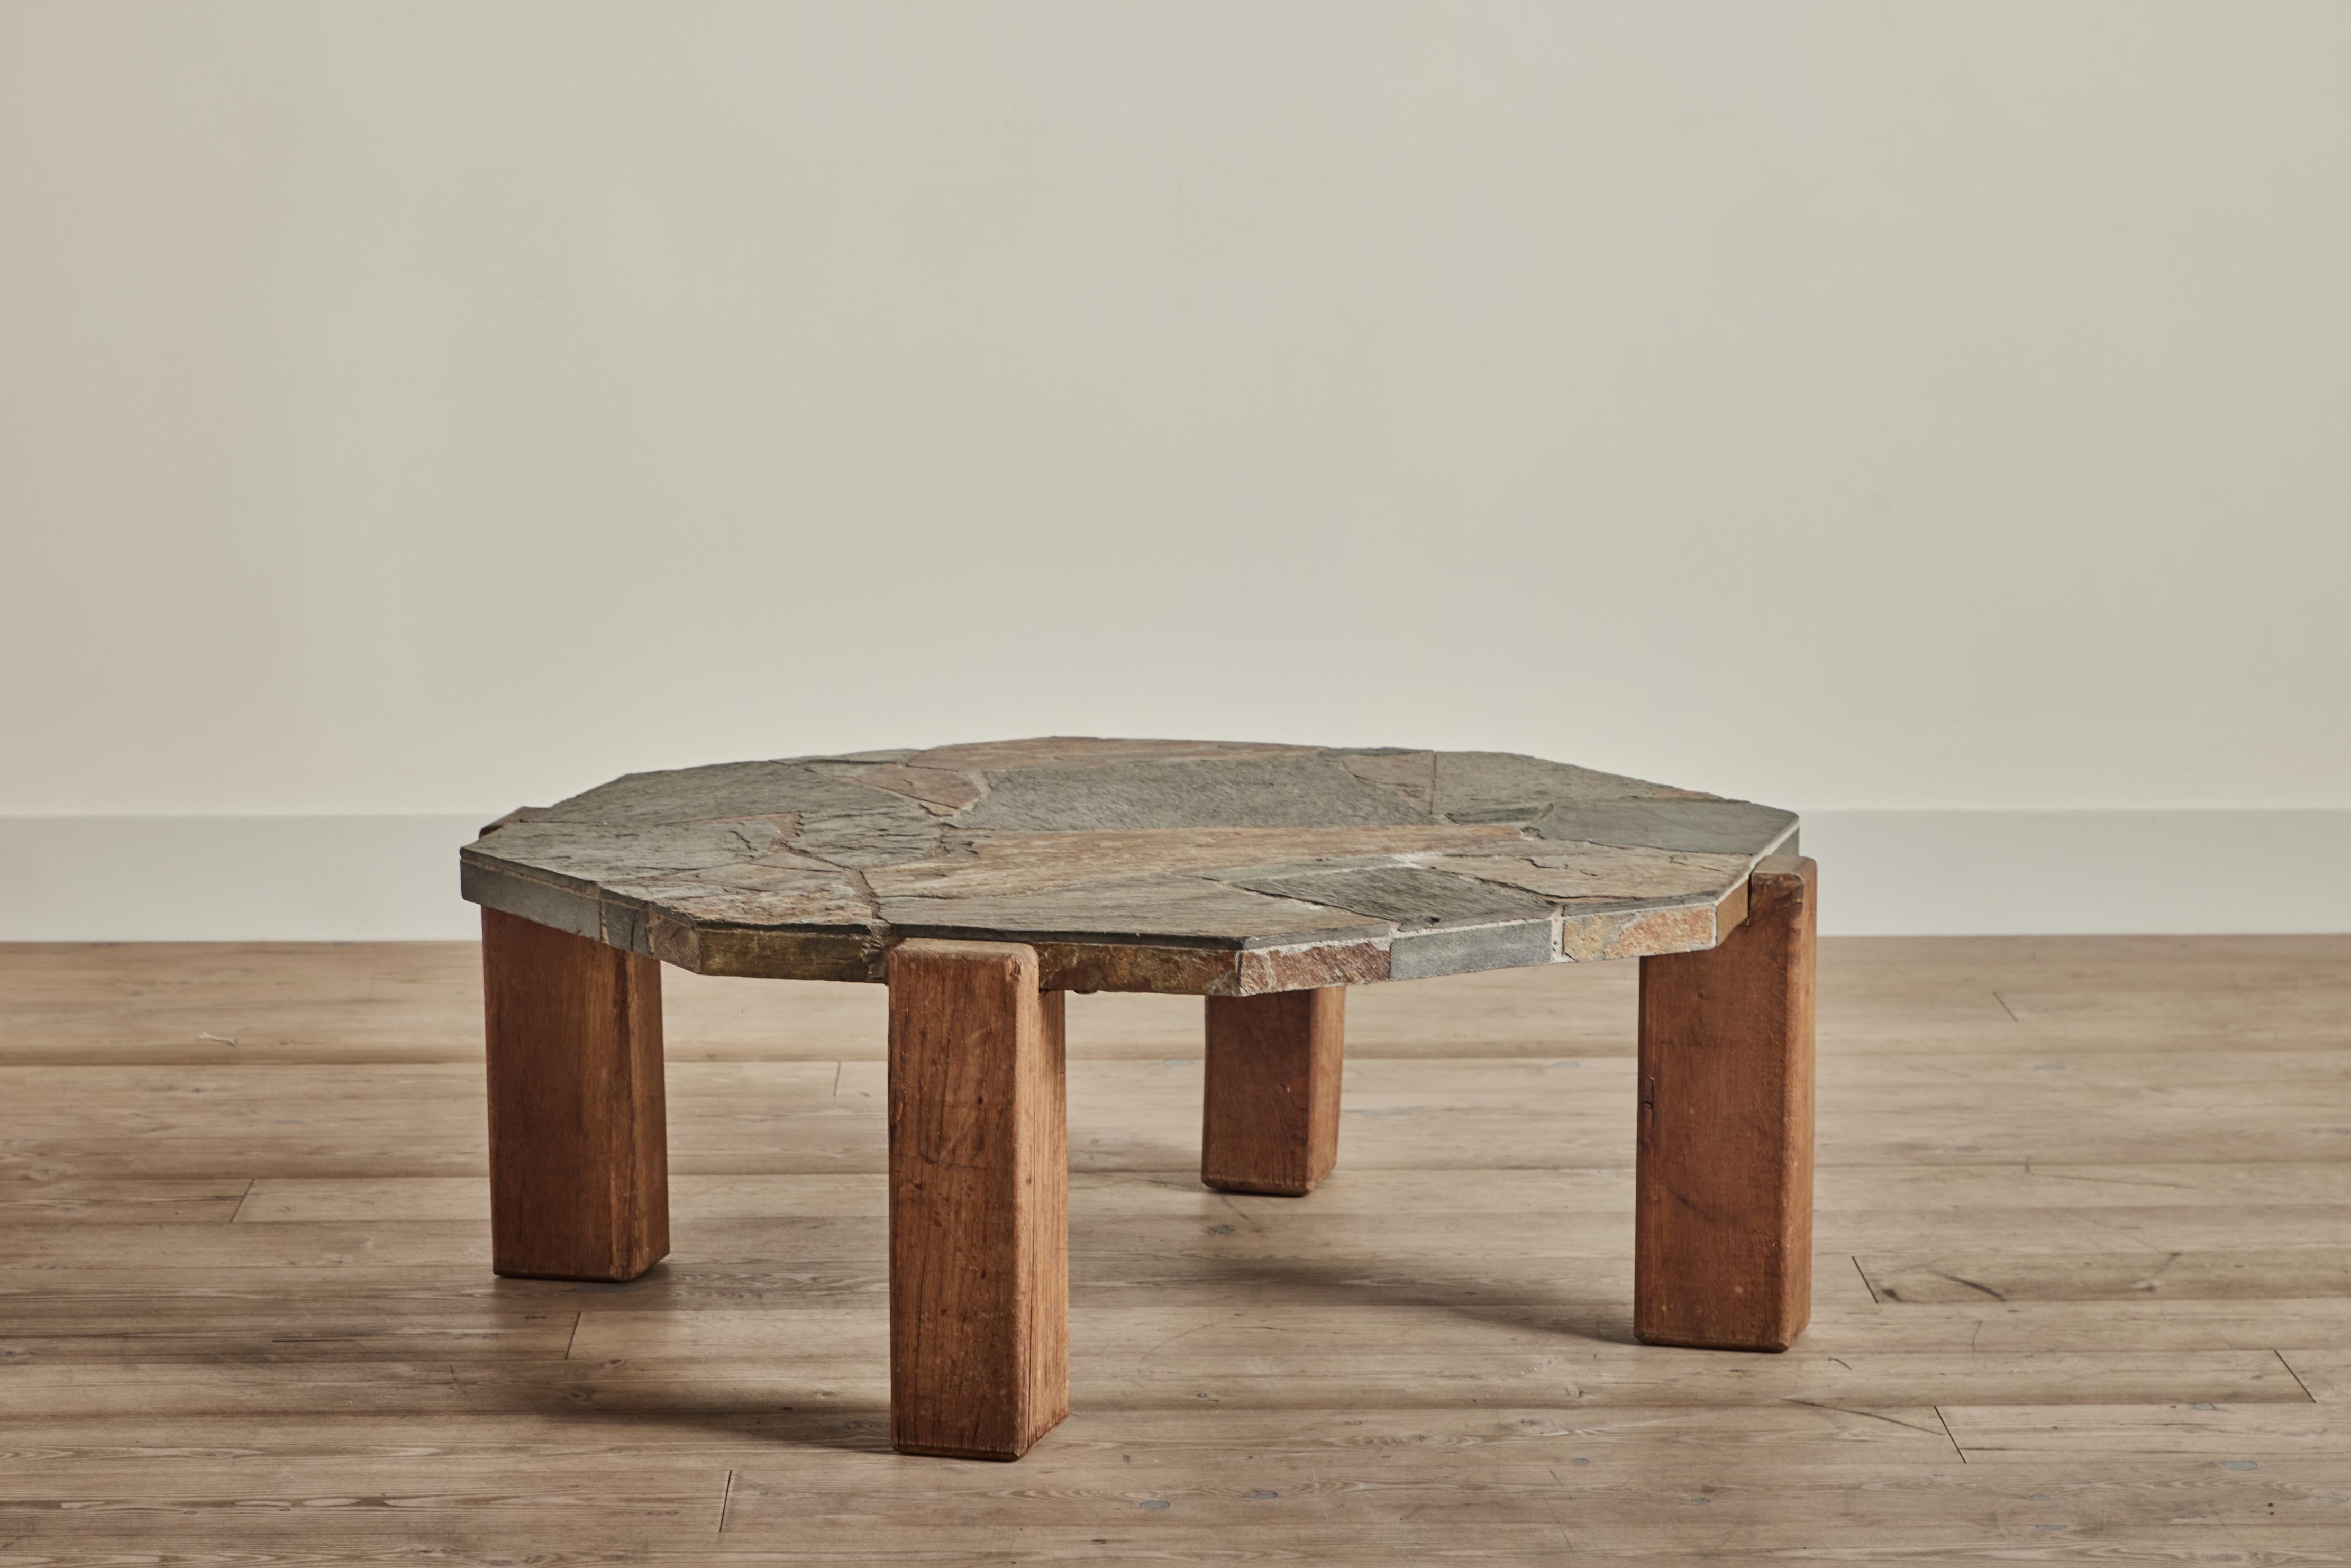 Table basse en ardoise du Danemark vers 1970. Cette table a un lourd plateau octogonal en mosaïque d'ardoise et des pieds en bois massif. L'usure de la table correspond à l'âge et à l'utilisation. 